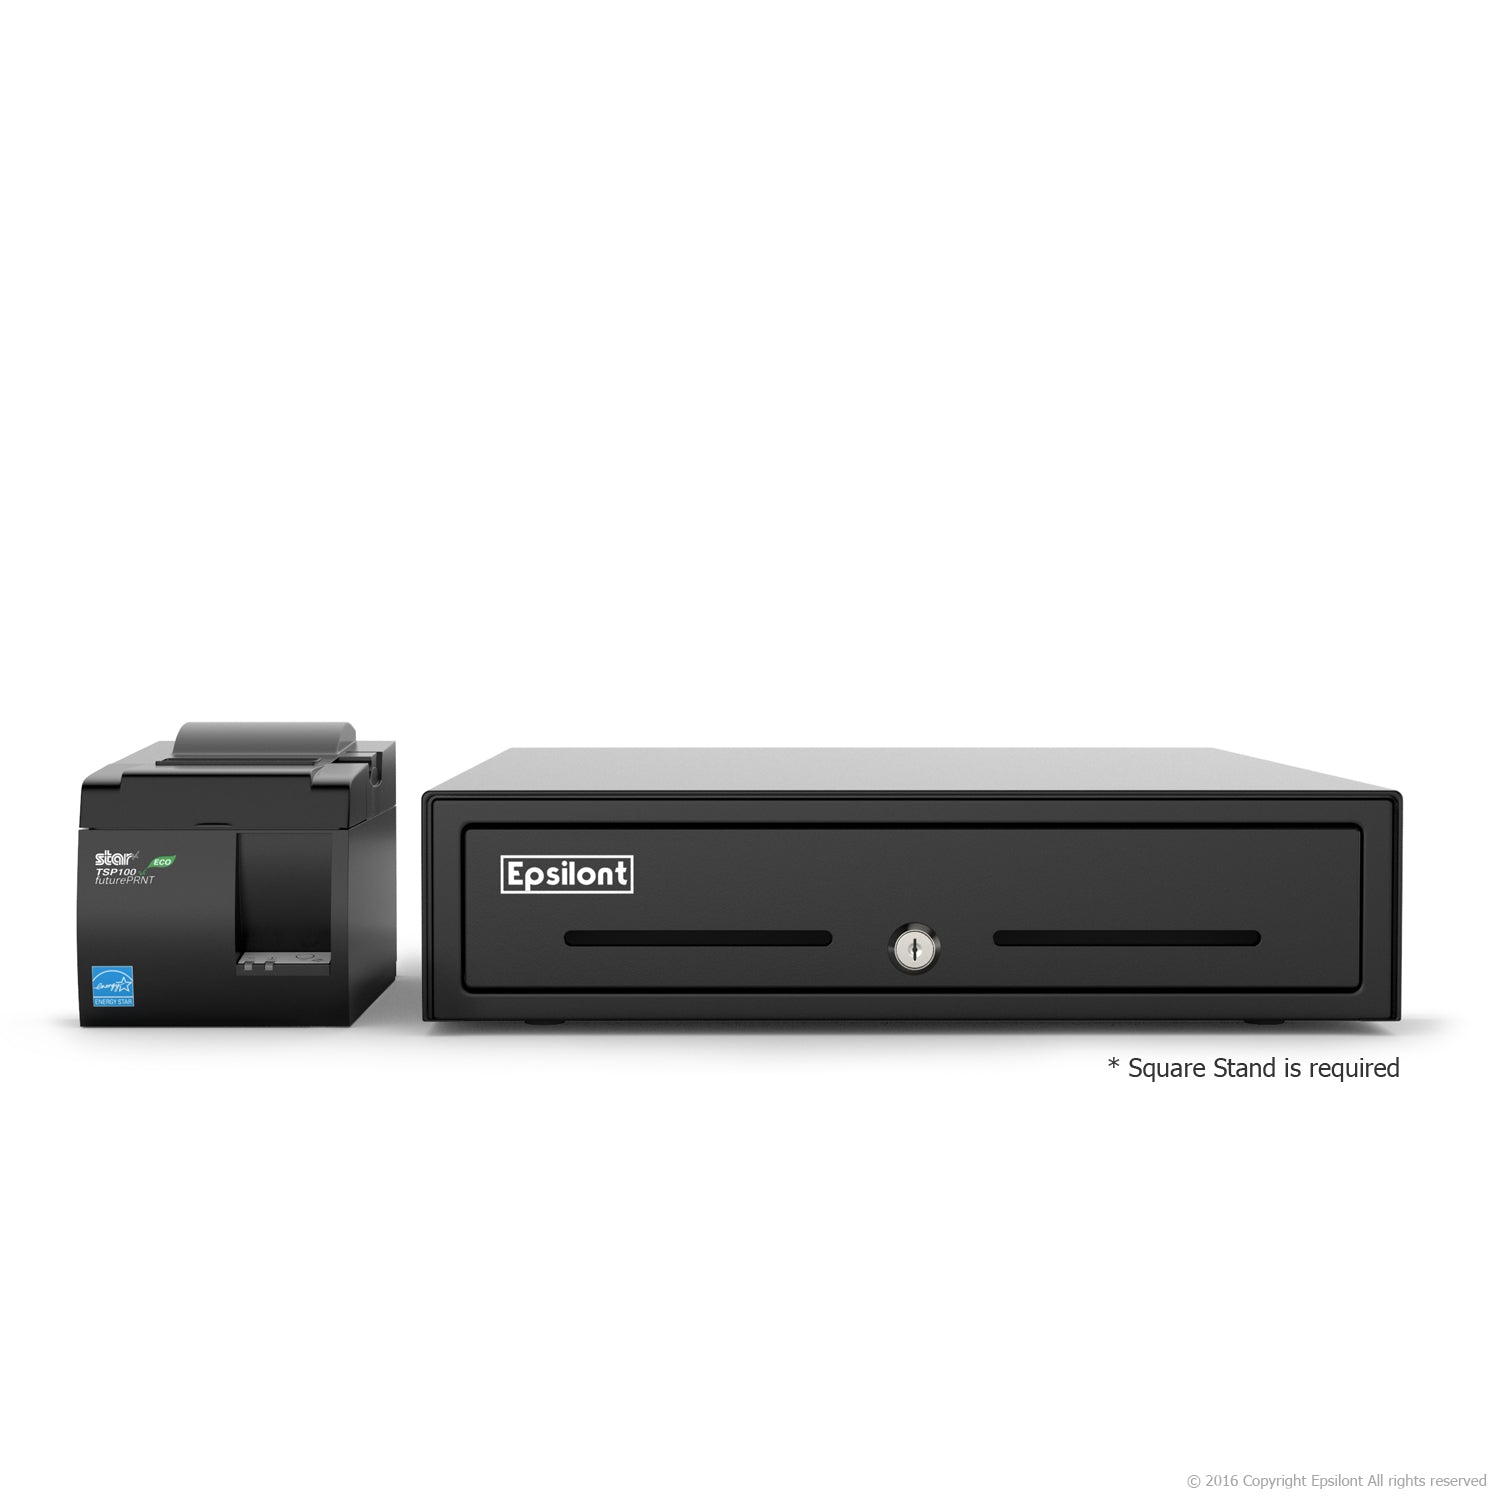 Mini Square Register Star Tsp100 Usb Receipt Printer 13 Cash